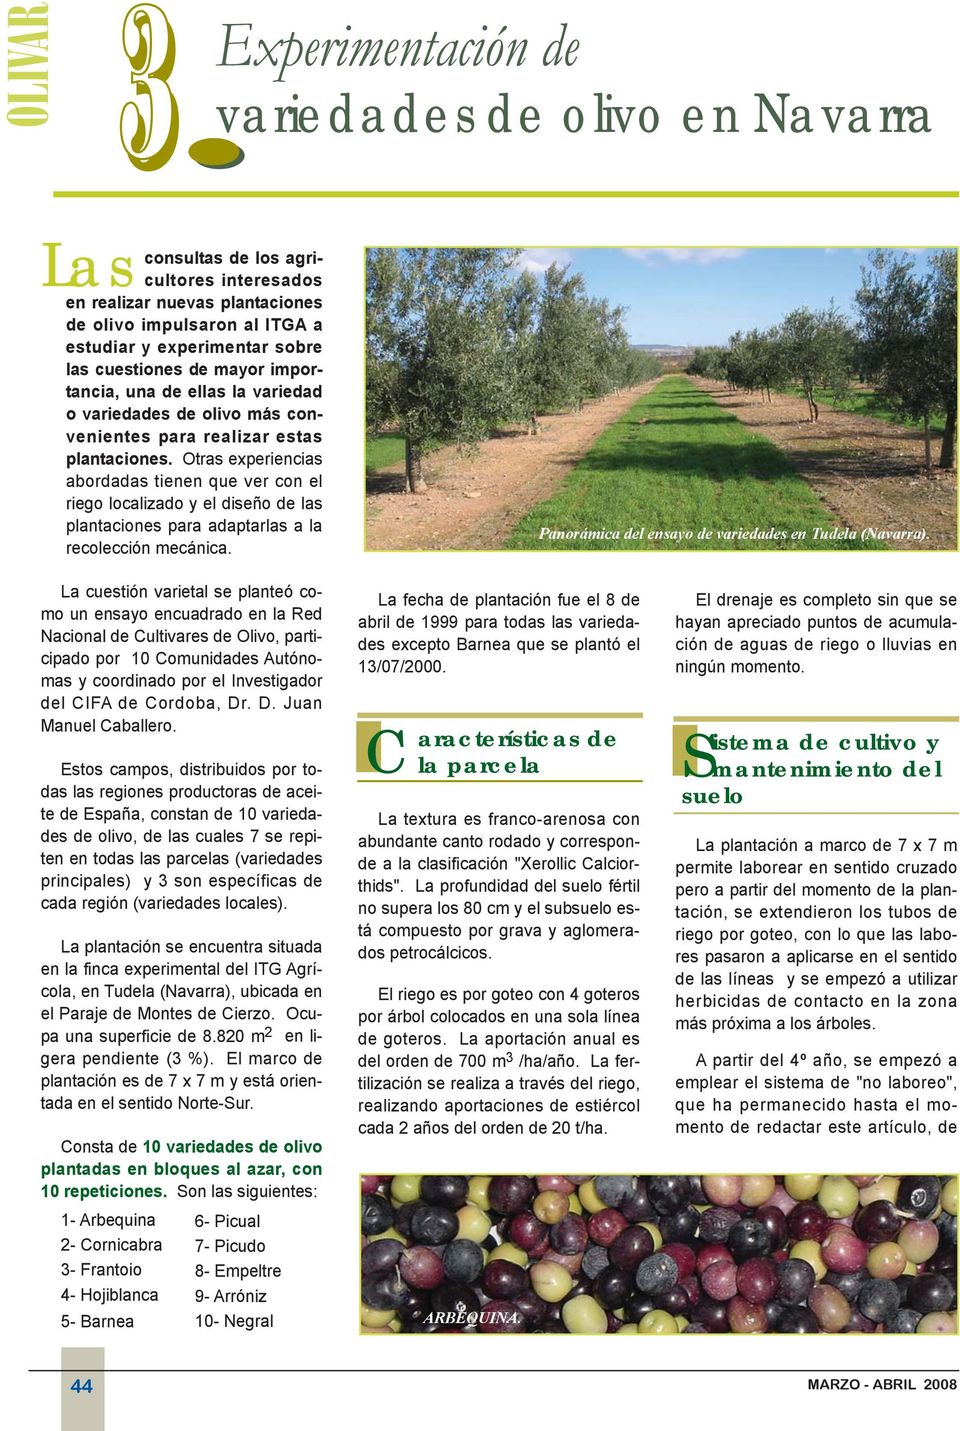 Otras experiencias abordadas tienen que ver con el riego localizado y el diseño de las plantaciones para adaptarlas a la recolección mecánica. Panorámica del ensayo de variedades en Tudela (Navarra).